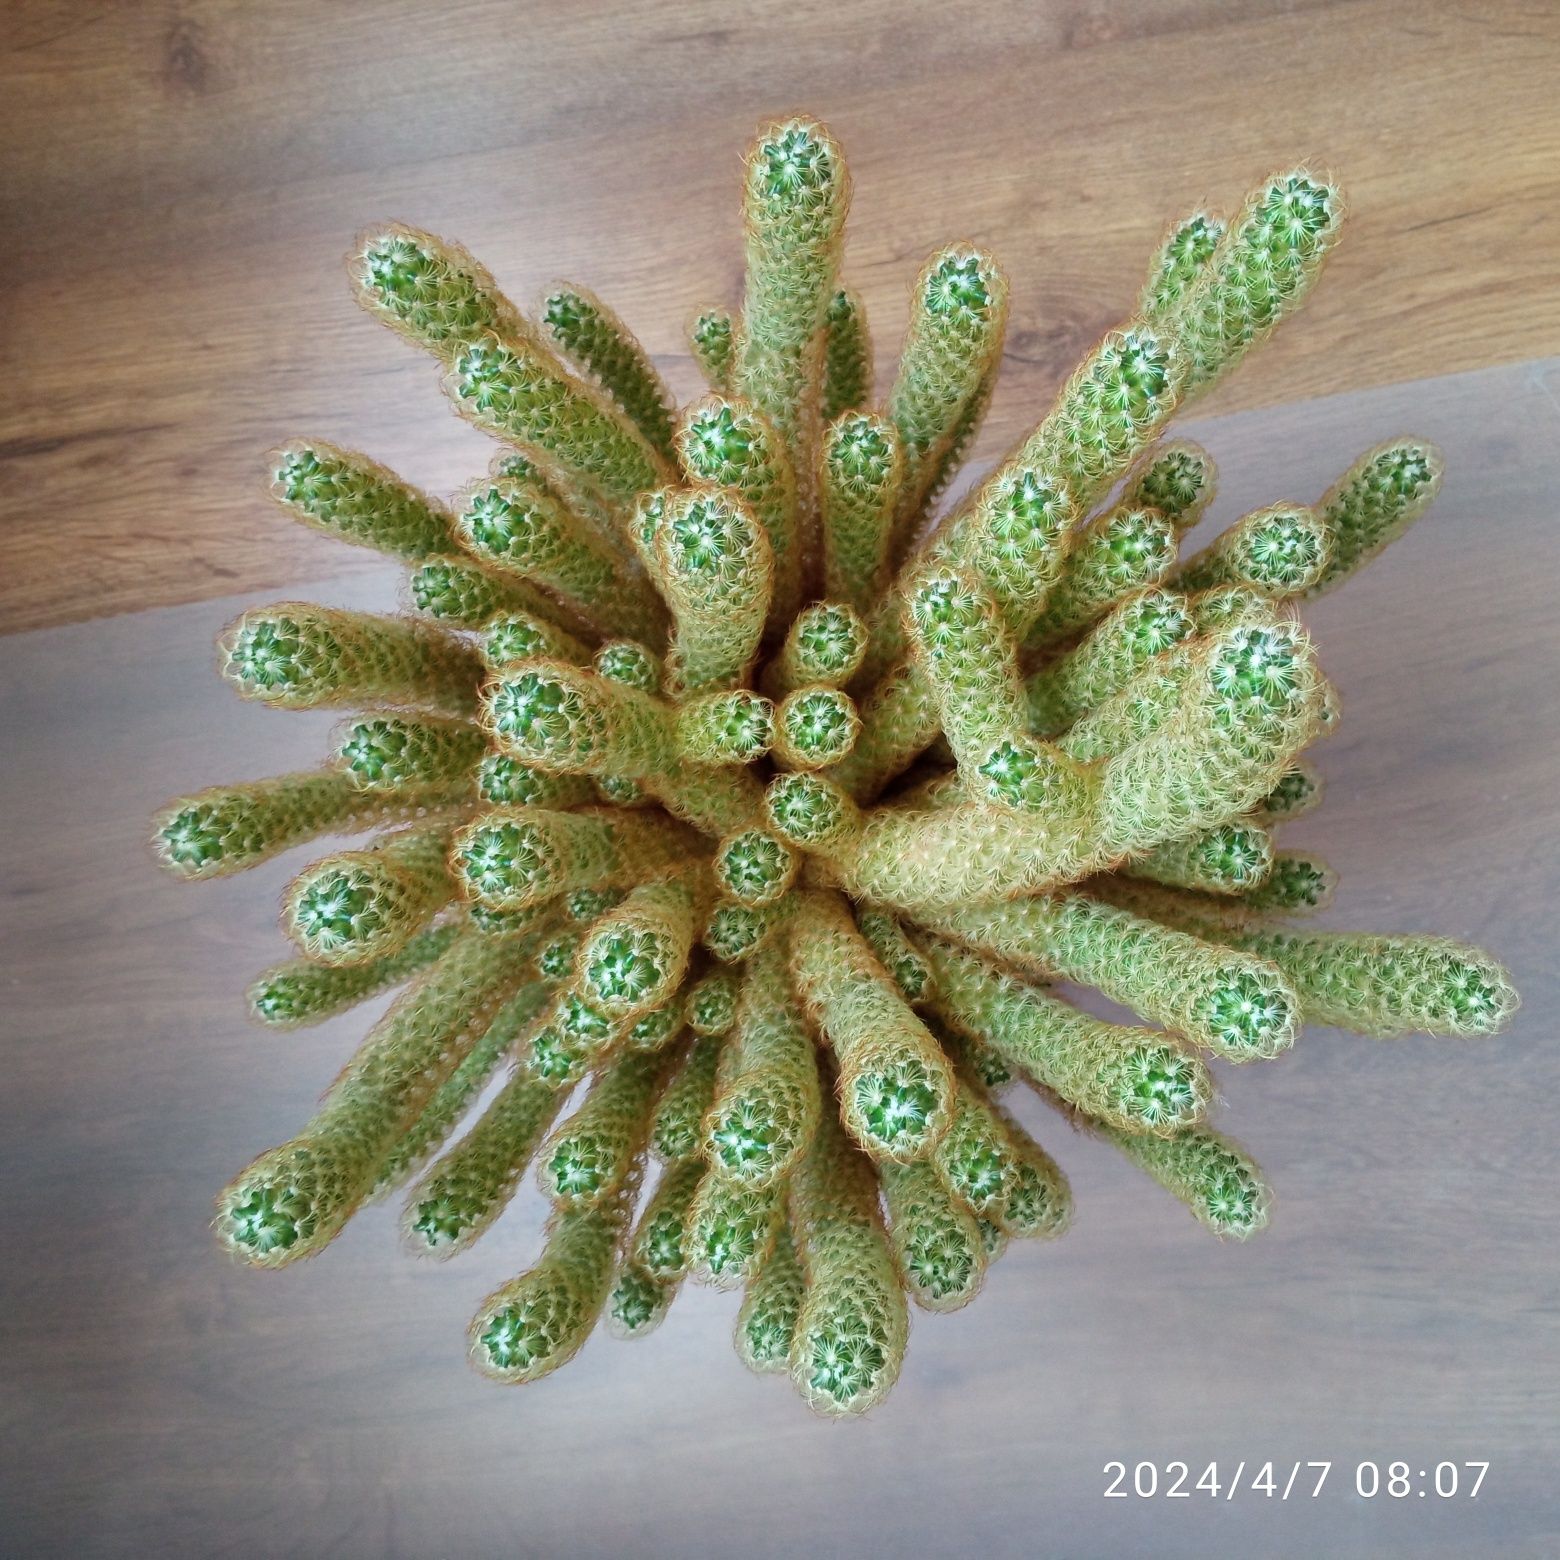 Kaktus Piękny zdrowy i bardzo duży